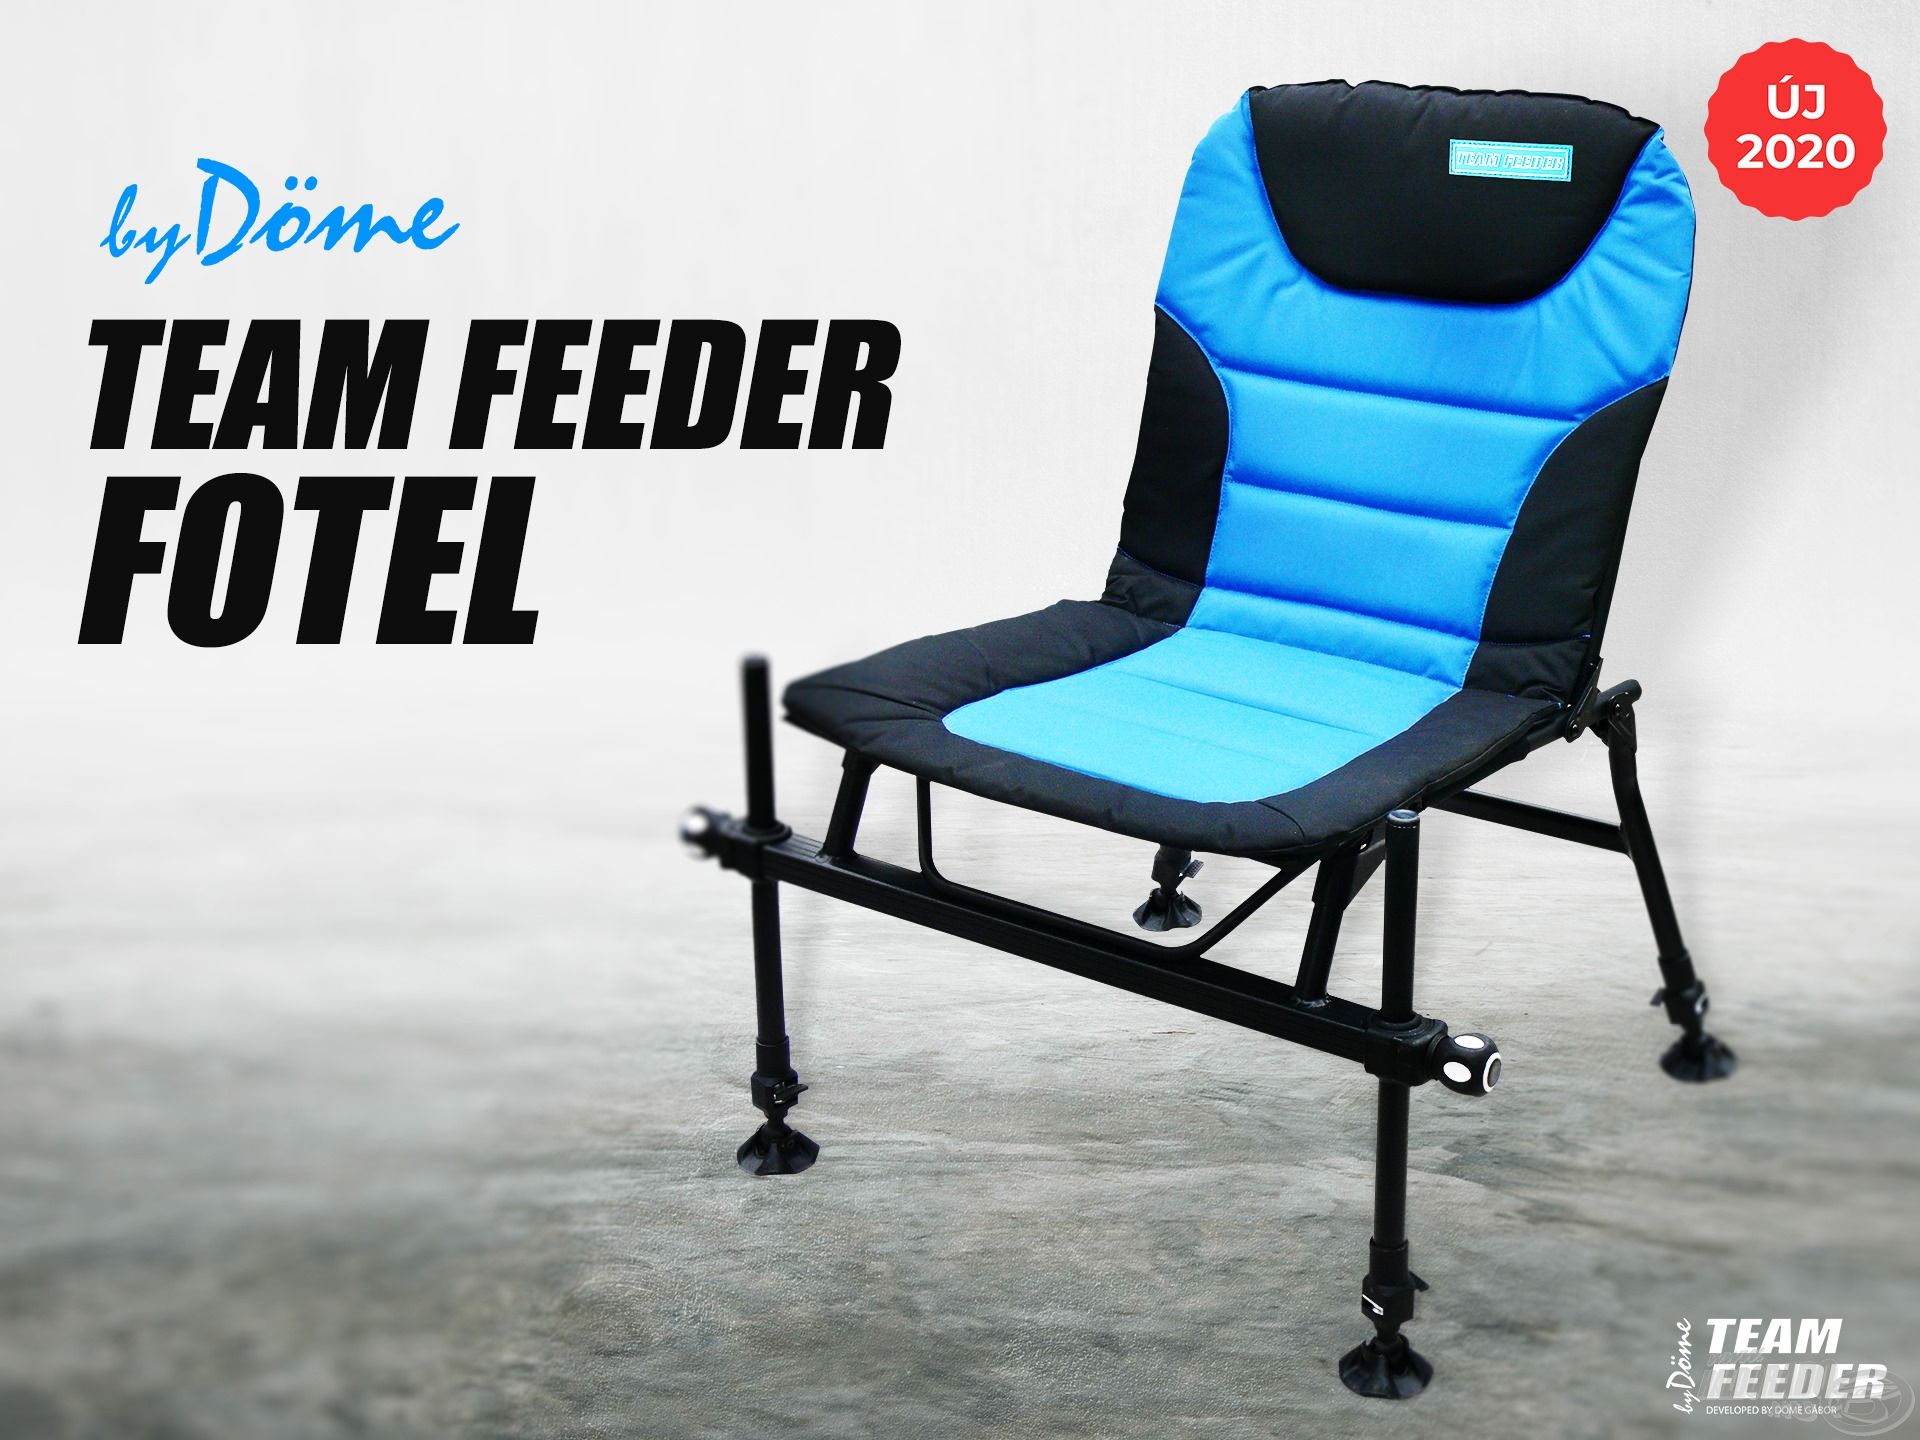 Örömmel mutatjuk be a By Döme TEAM FEEDER Fotelt, ami egy jól átgondolt, magas minőségű anyagokból készült és profi módon kivitelezett vízparti ülőalkalmatosság